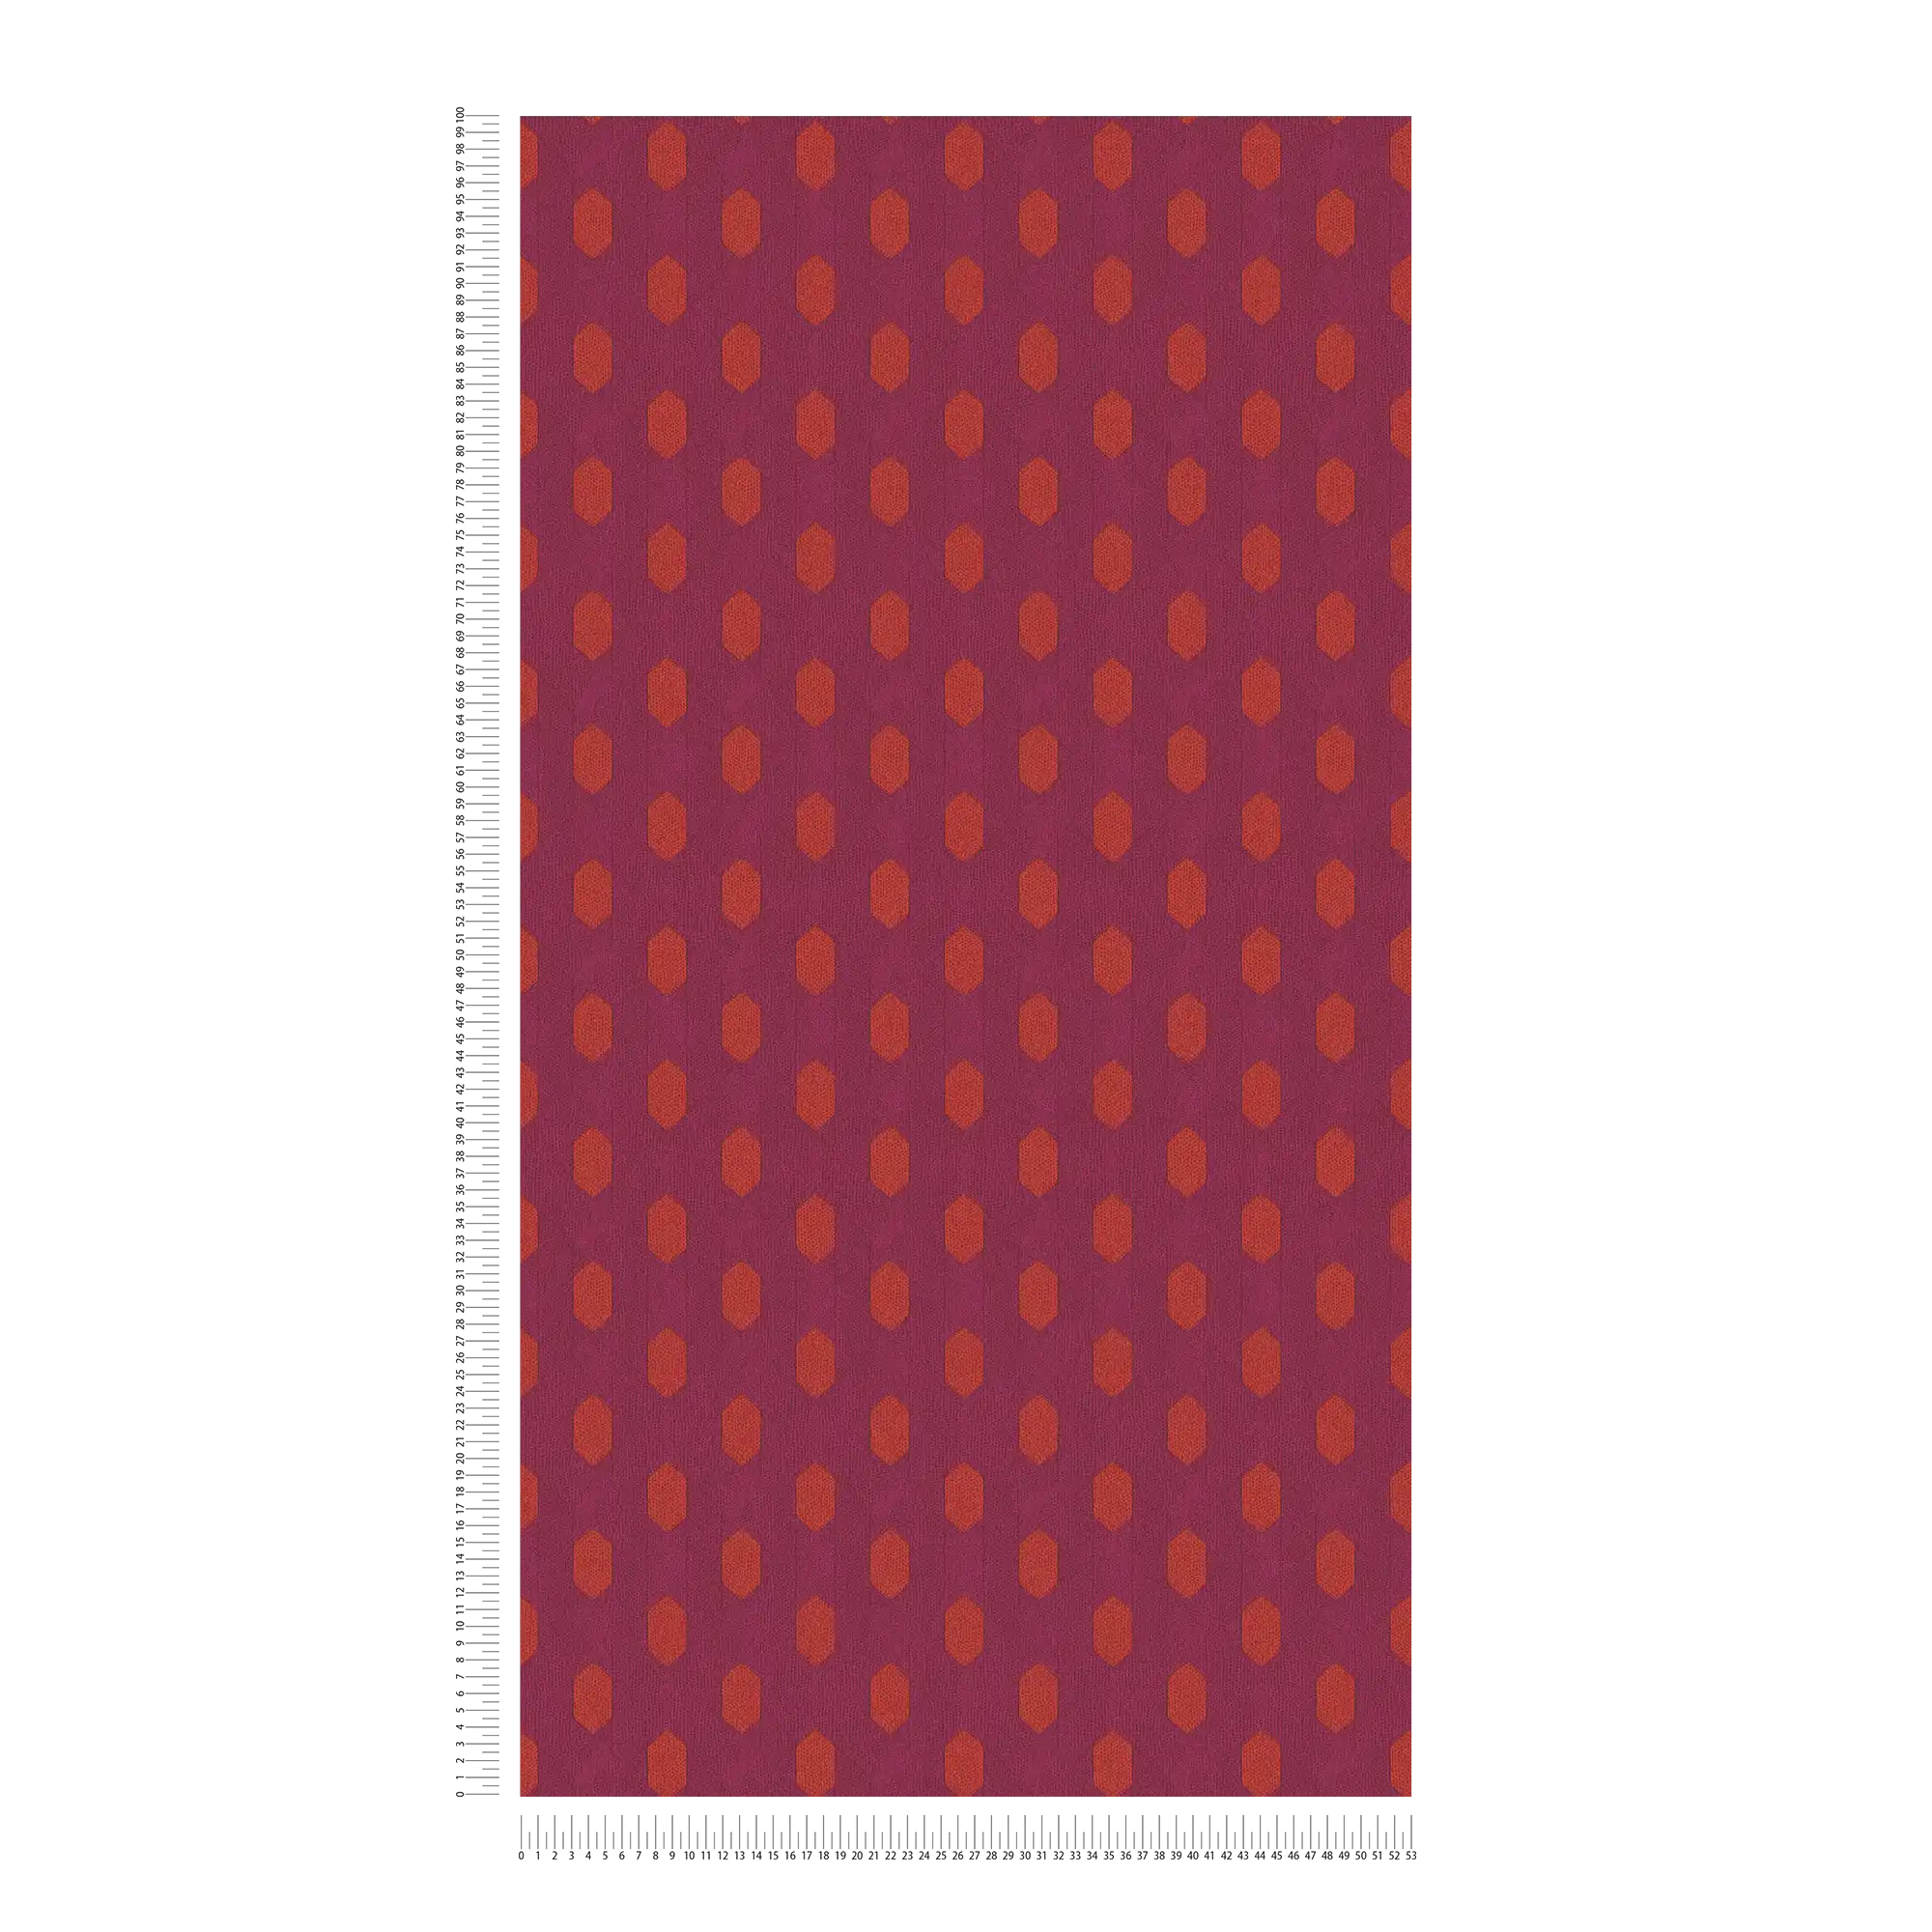             Magenta Tapete mit geometrischem Muster – Violett, Rot, Orange
        